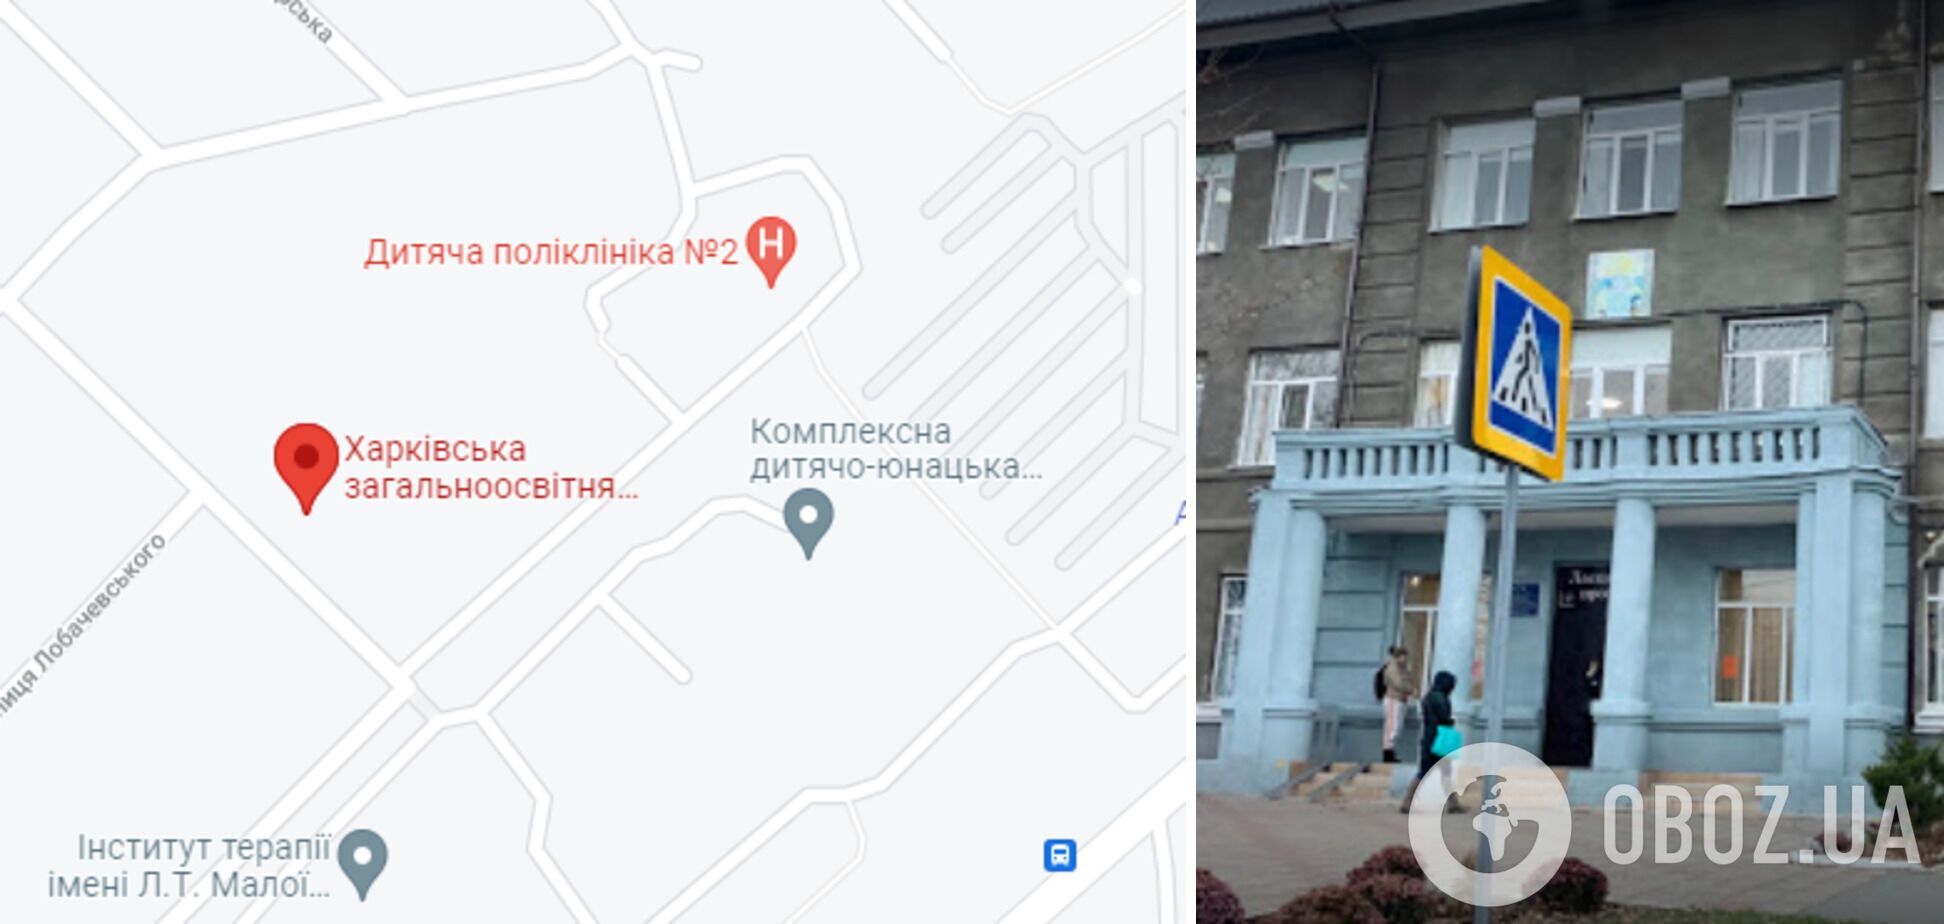 Скандал произошел в столовой школы №28 Харькова